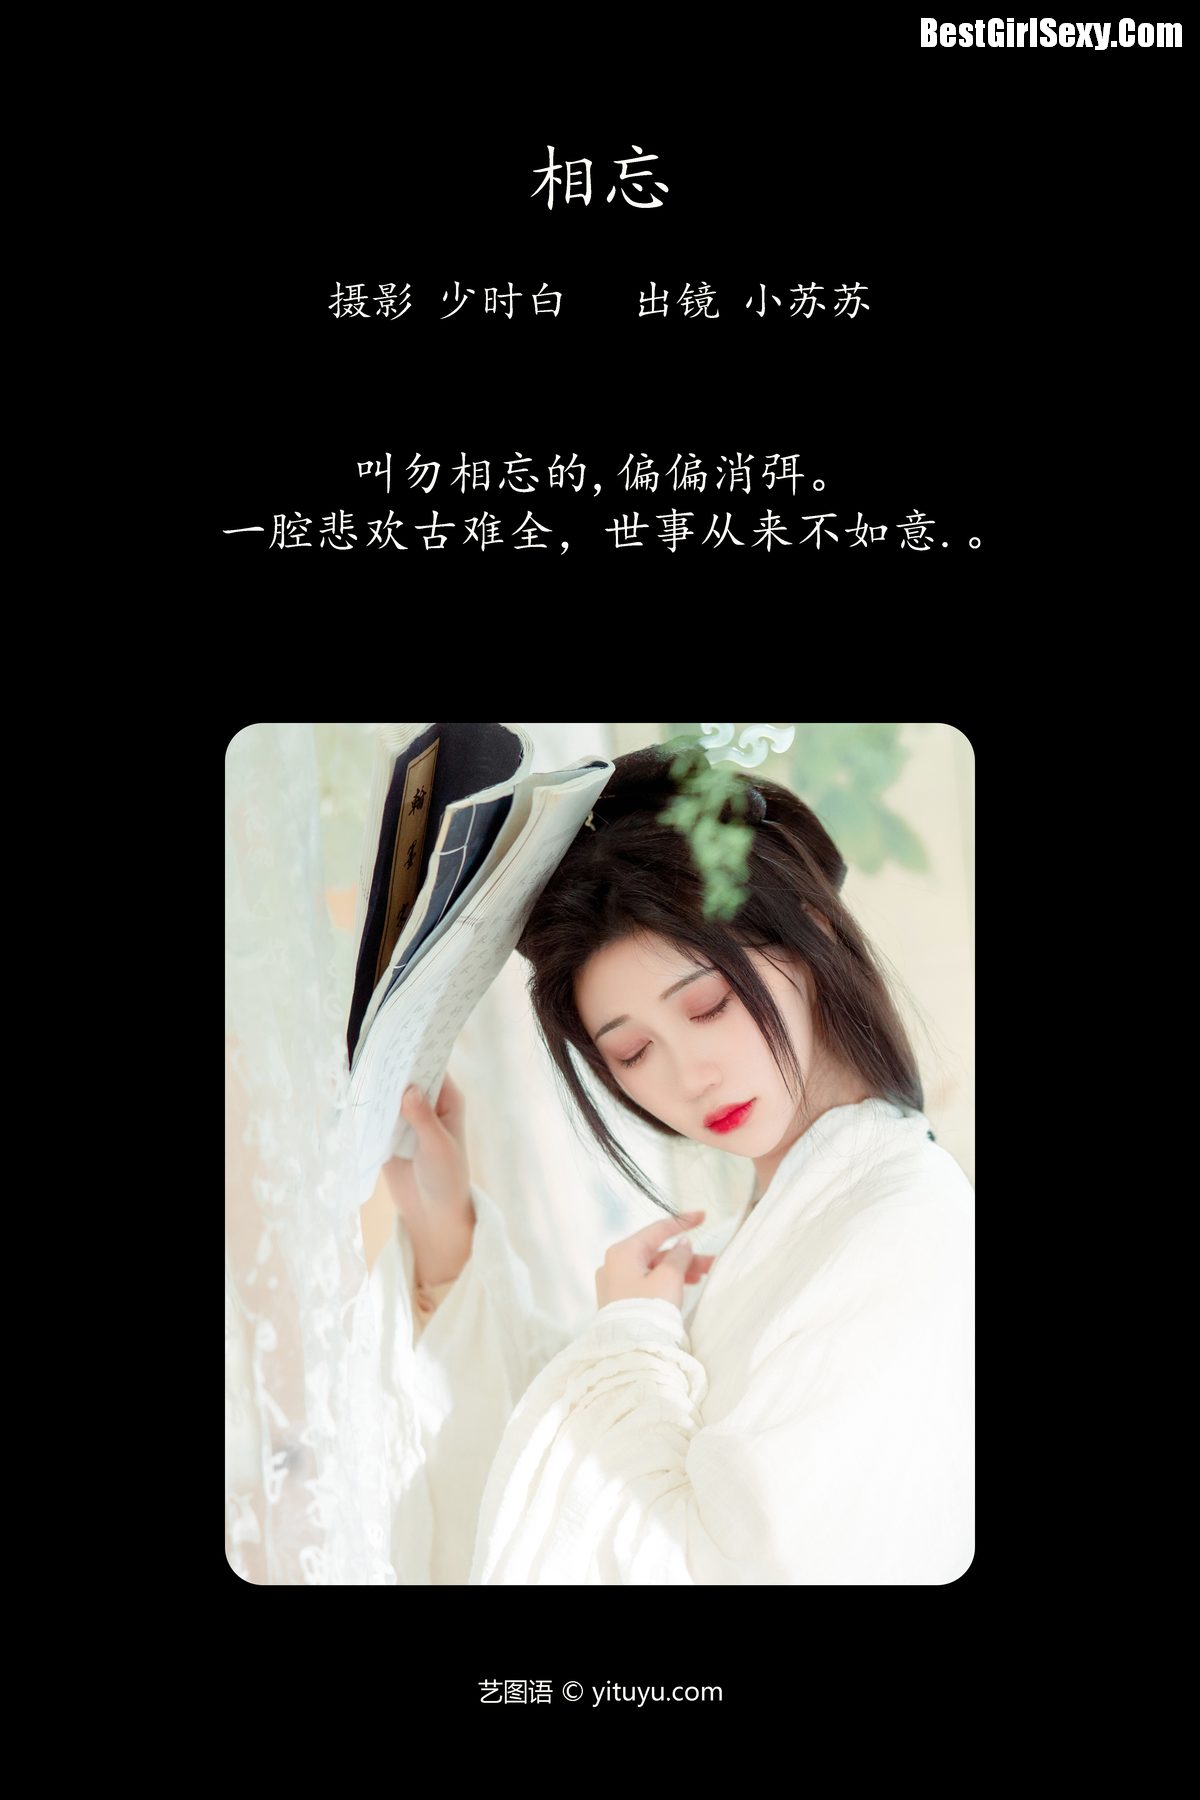 YiTuYu艺图语 Vol 4126 Qi Luo Sheng De Xiao Su Su 0002 6673416874.jpg